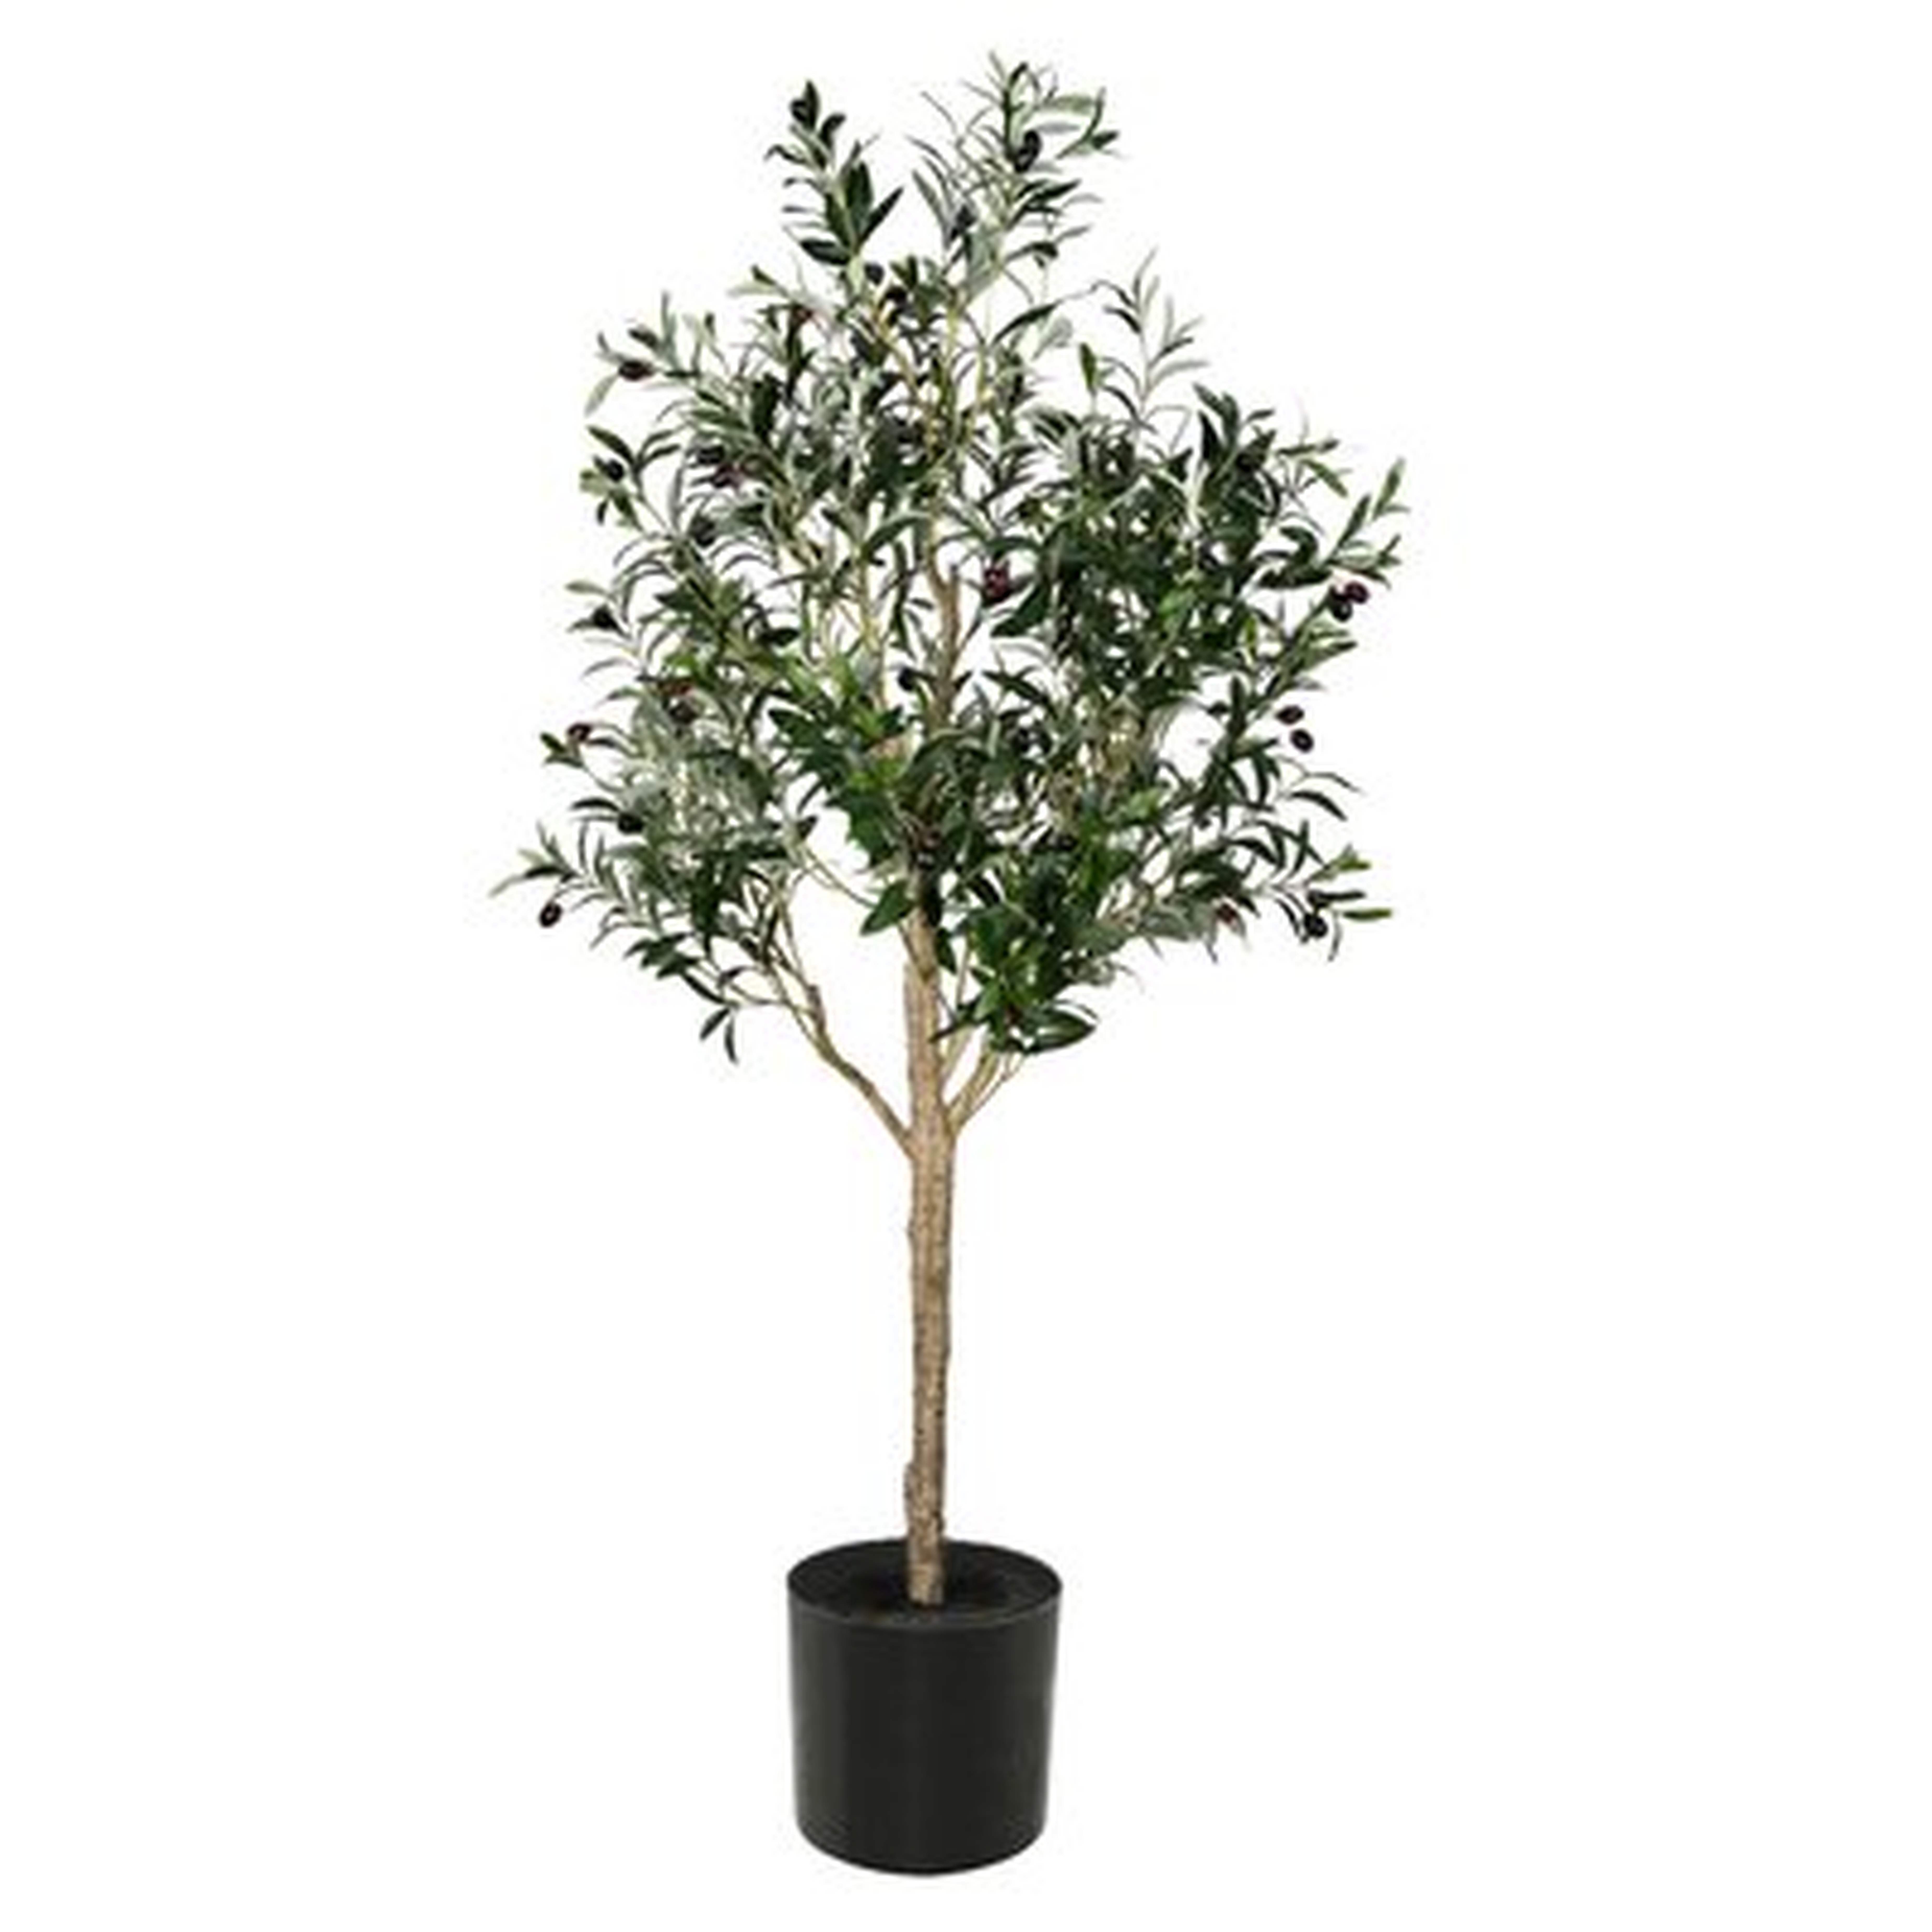 Artificial Olive Tree in Pot, 60" - Wayfair